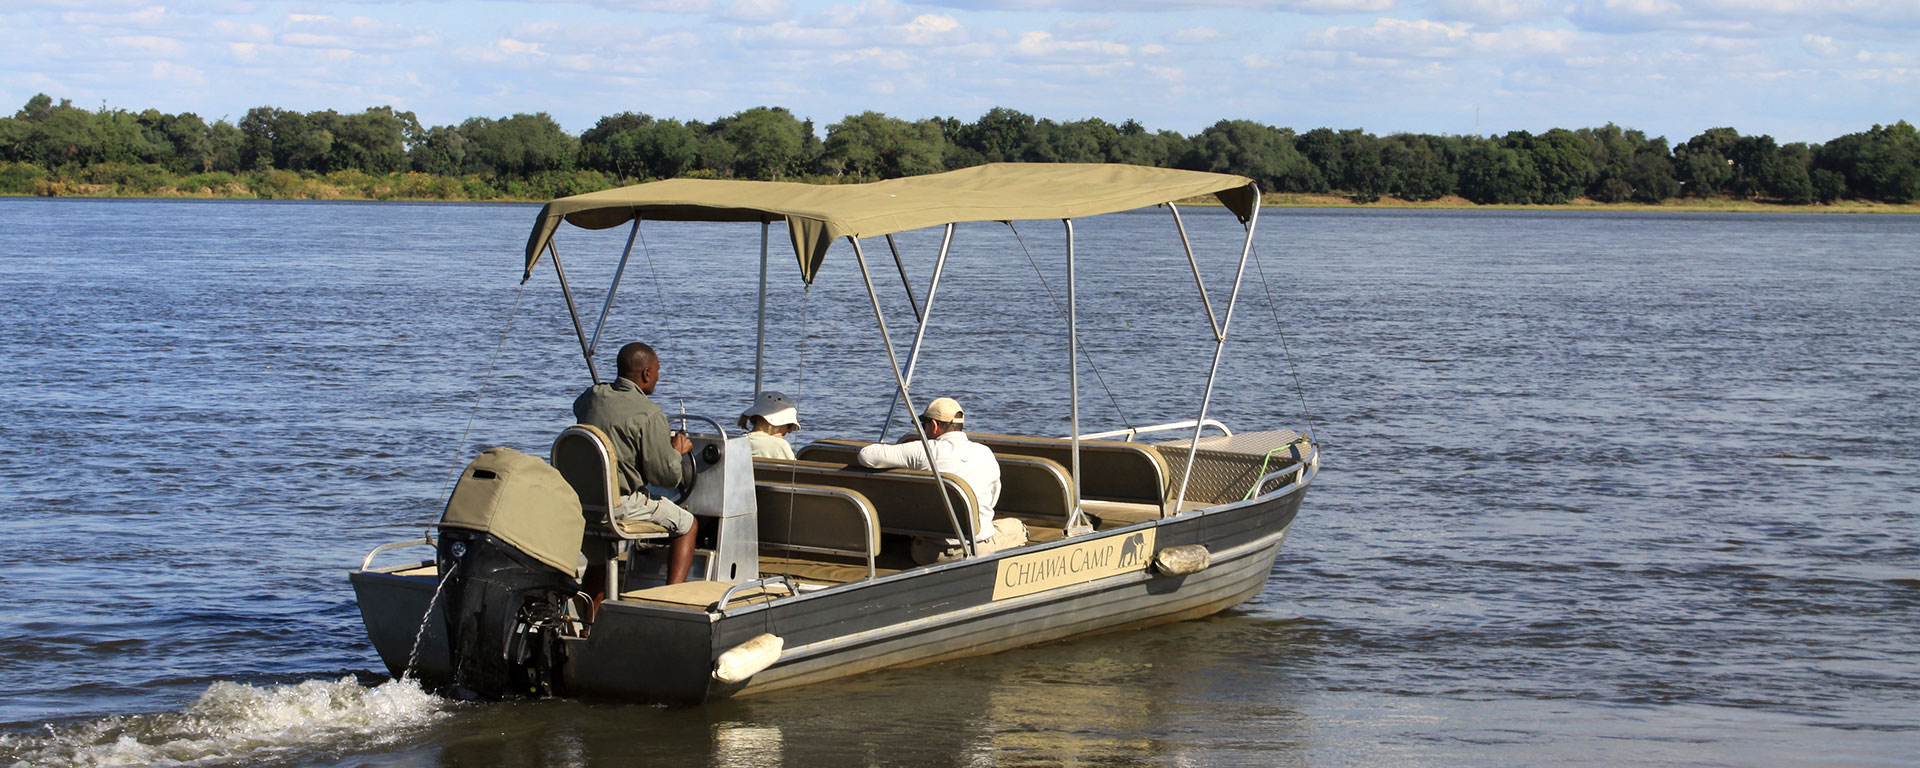 things-to-see-do-lower-zambezi-boating